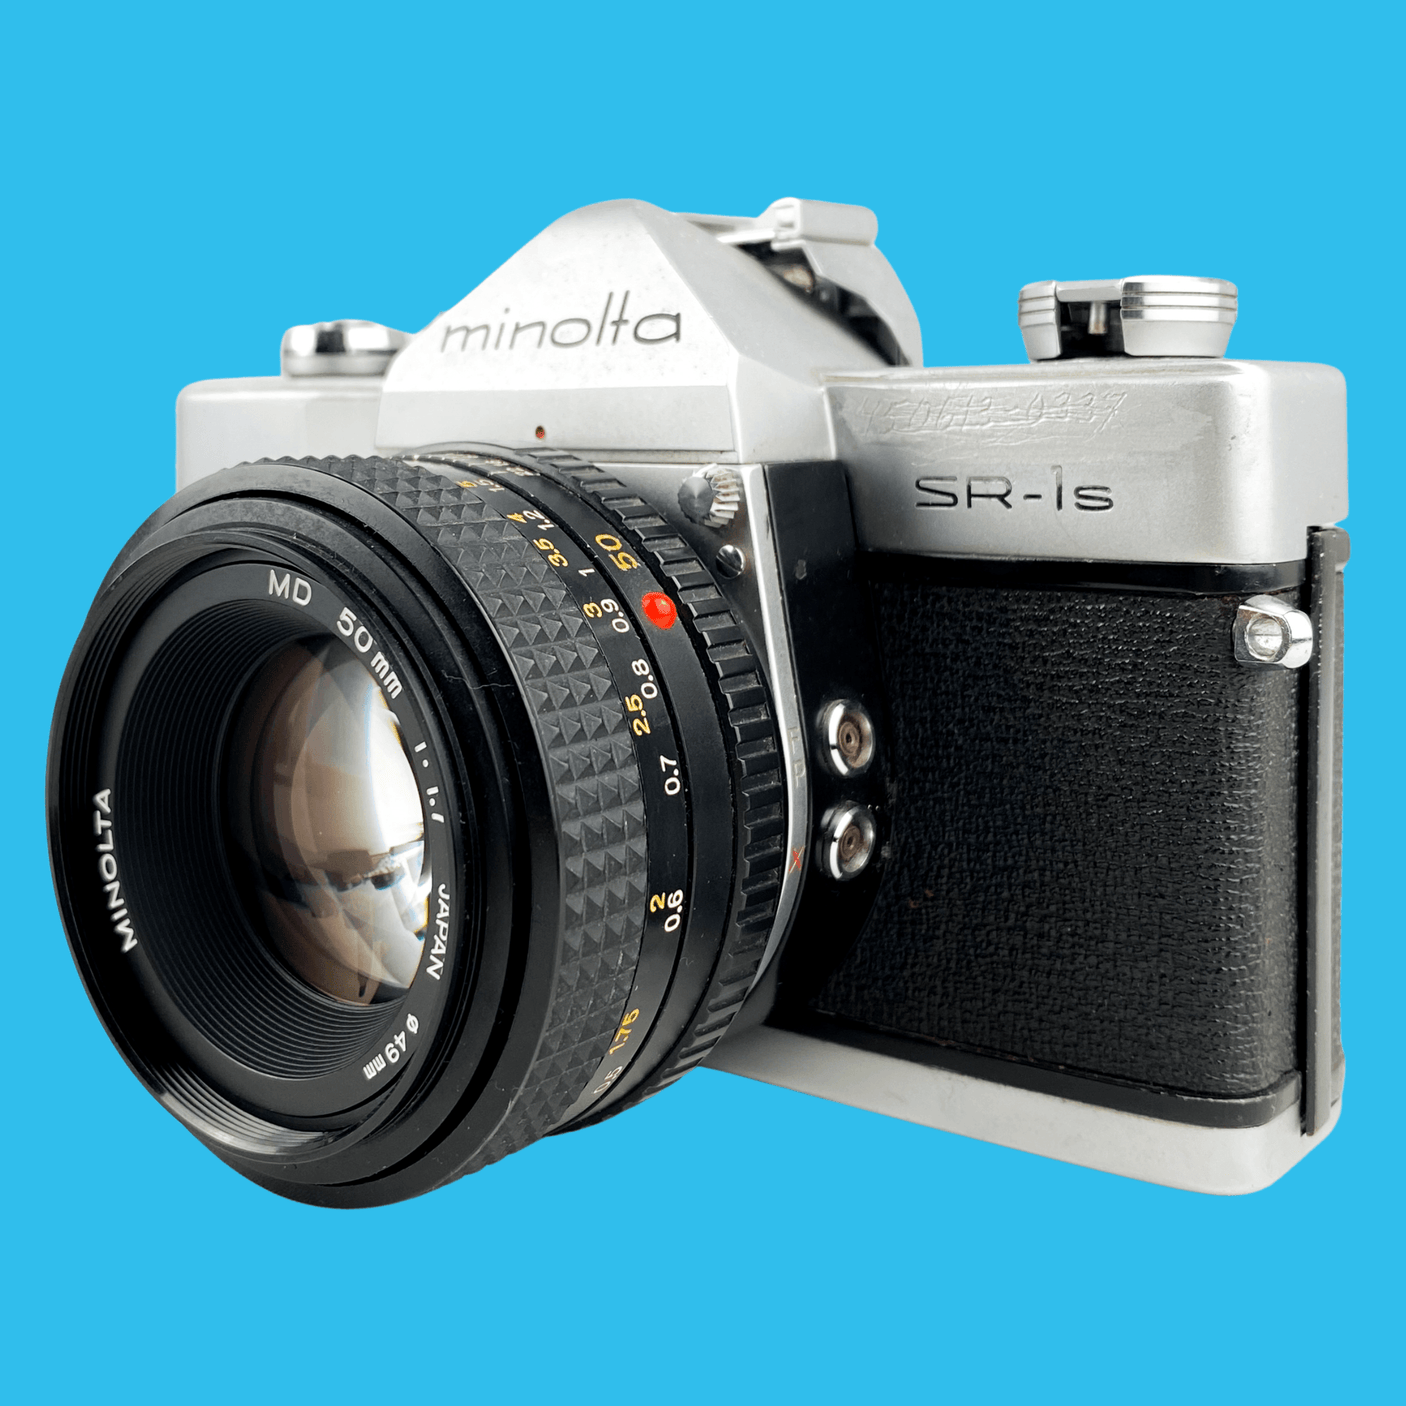 Minolta SR-1s SLR 35mm Film Camera with lens